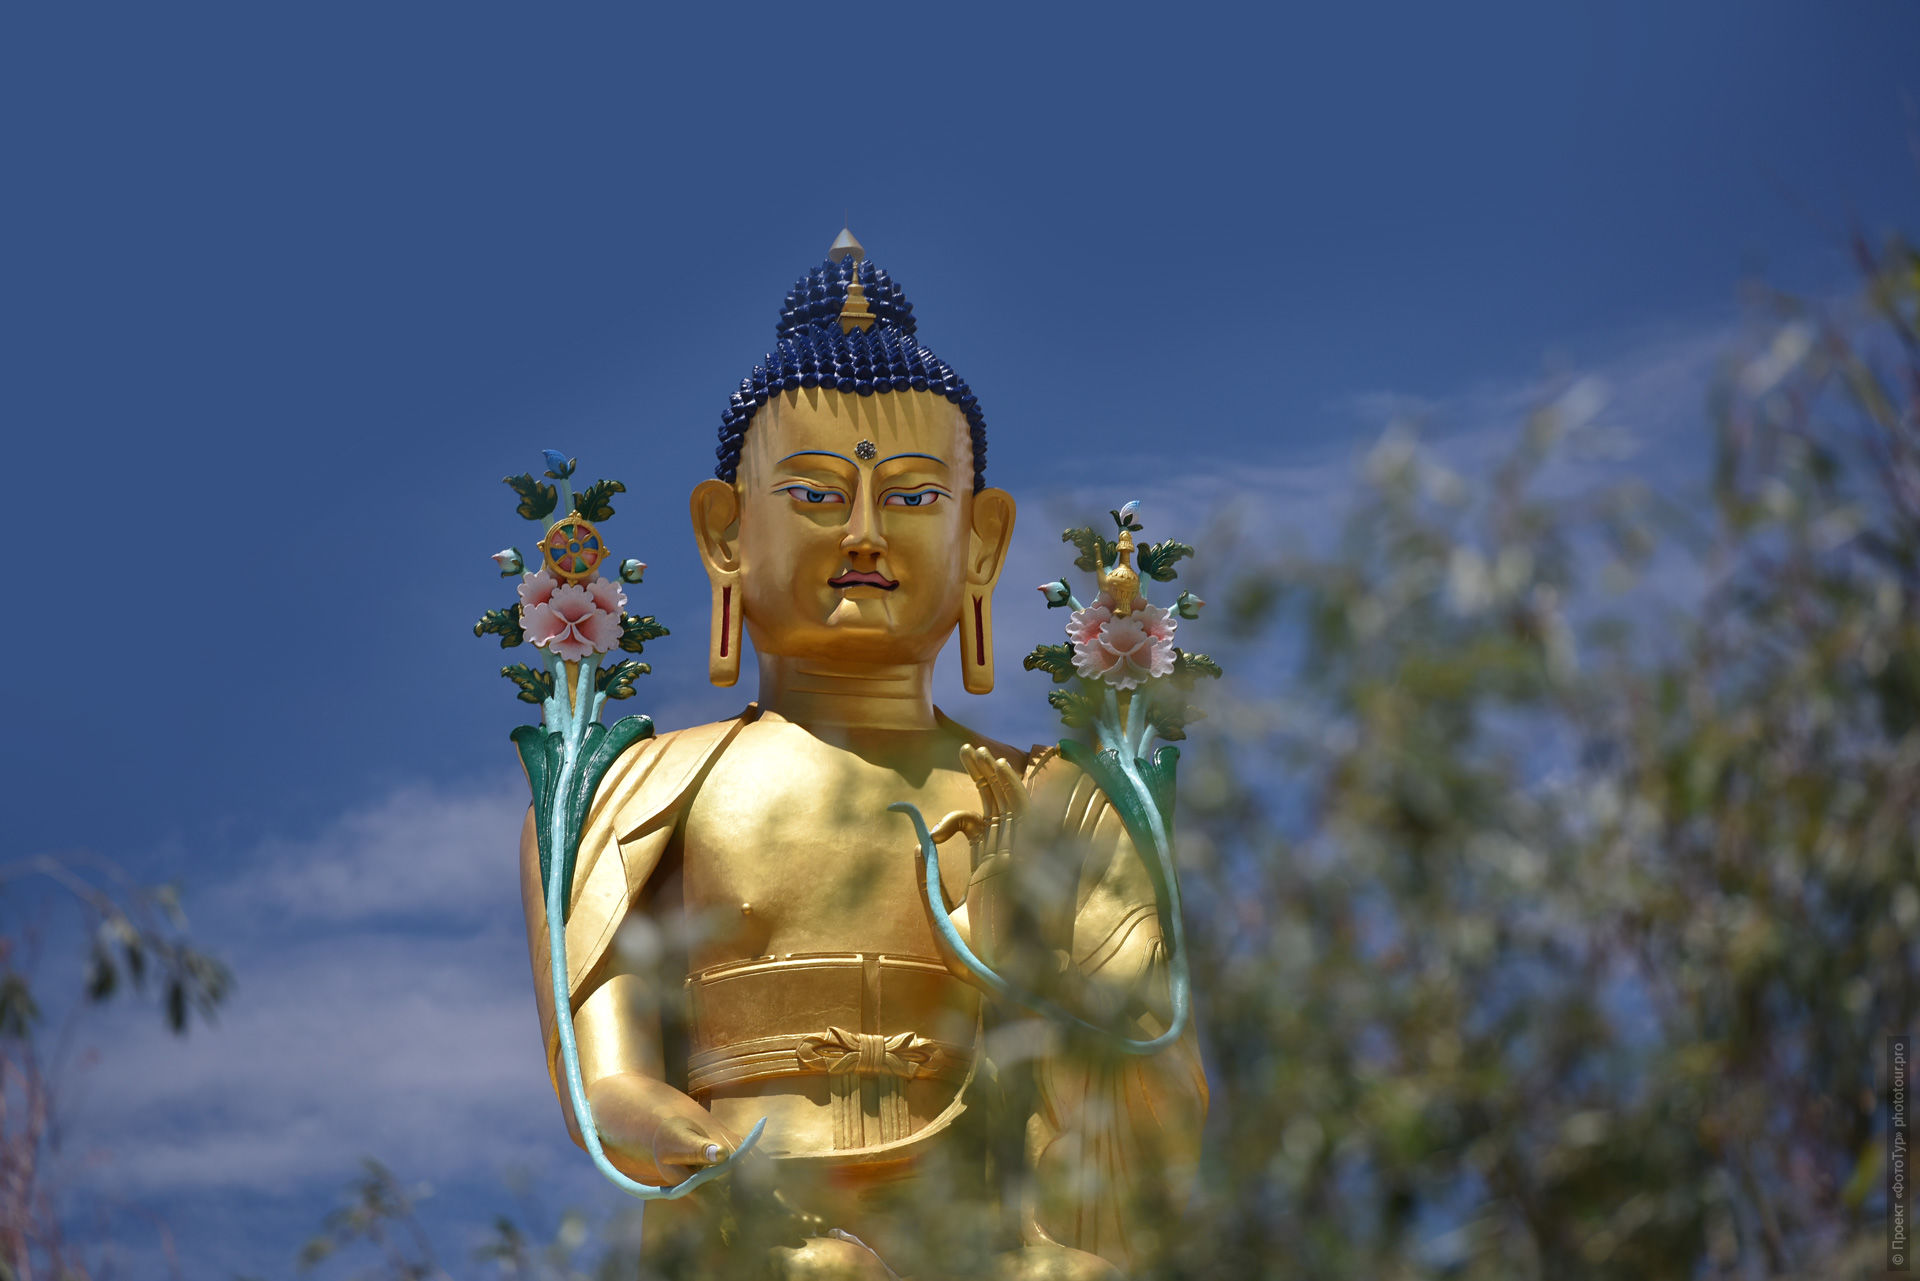 Статуя Будды Шакьямуни в монастыре Ликир Гонпа, Ладакх, Гималаи, Северная Индия.